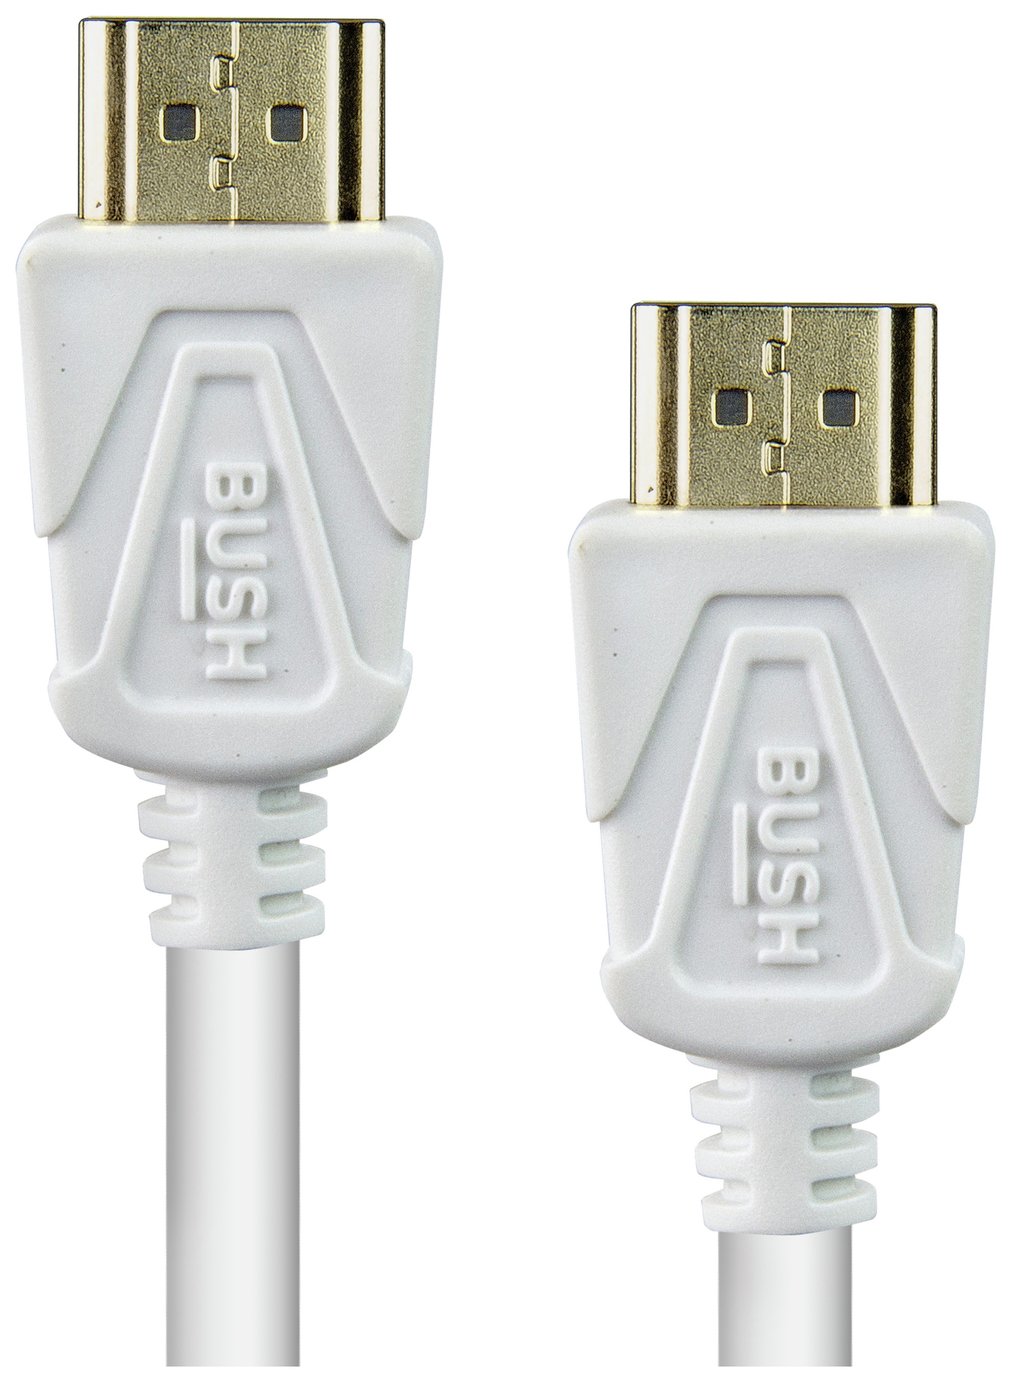 Bush HDMI Cable - 2m